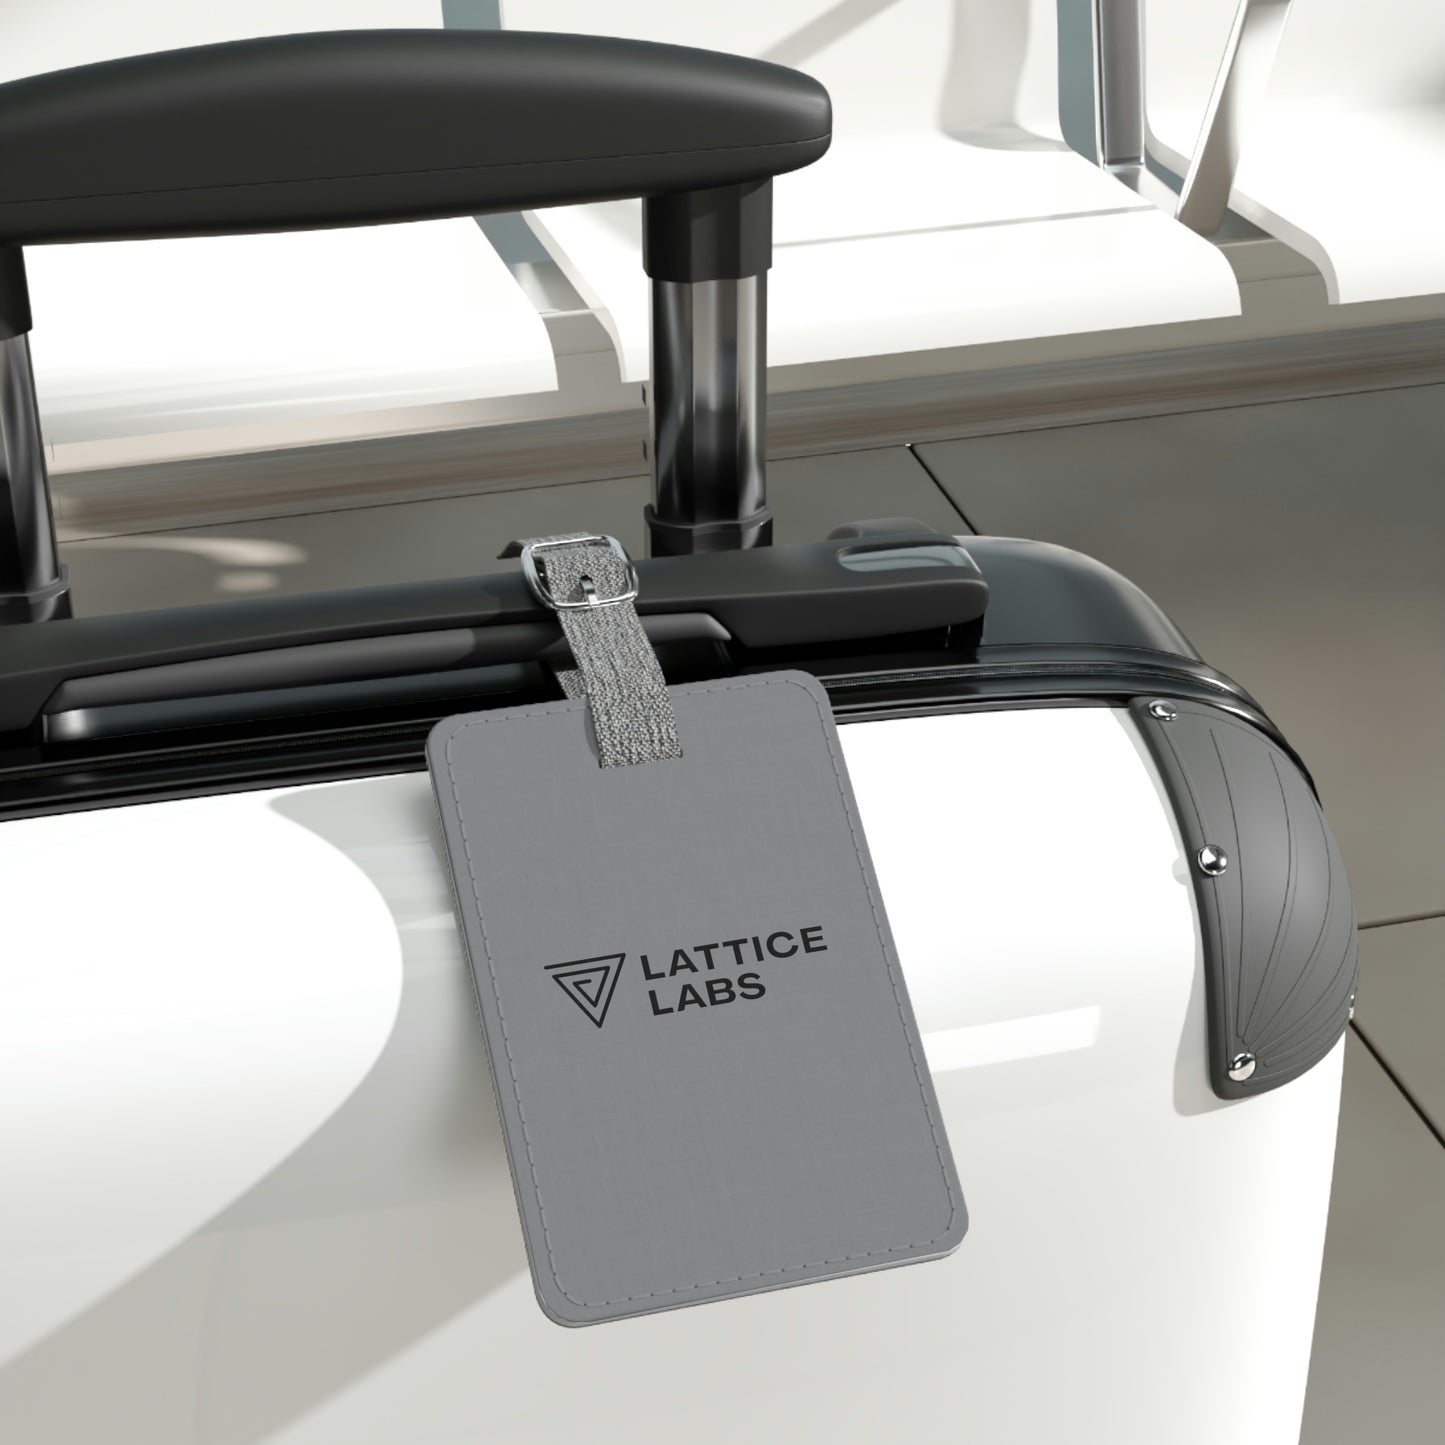 Lattice Labs Luggage Tag